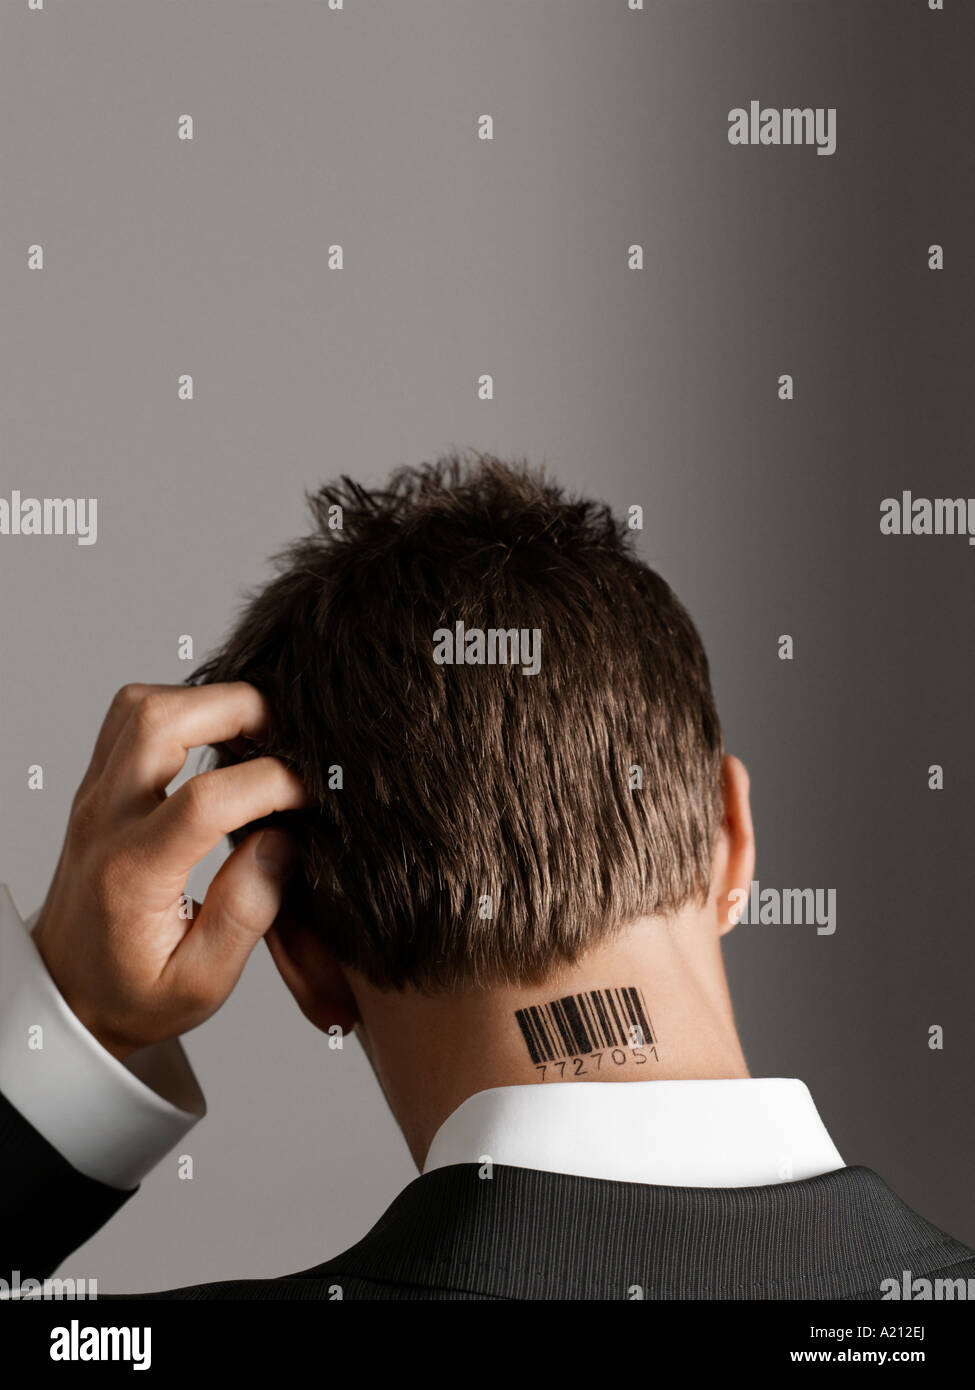 Jeune homme avec code barre tatouage sur son cou, se grattant la tête, vue de dos Banque D'Images